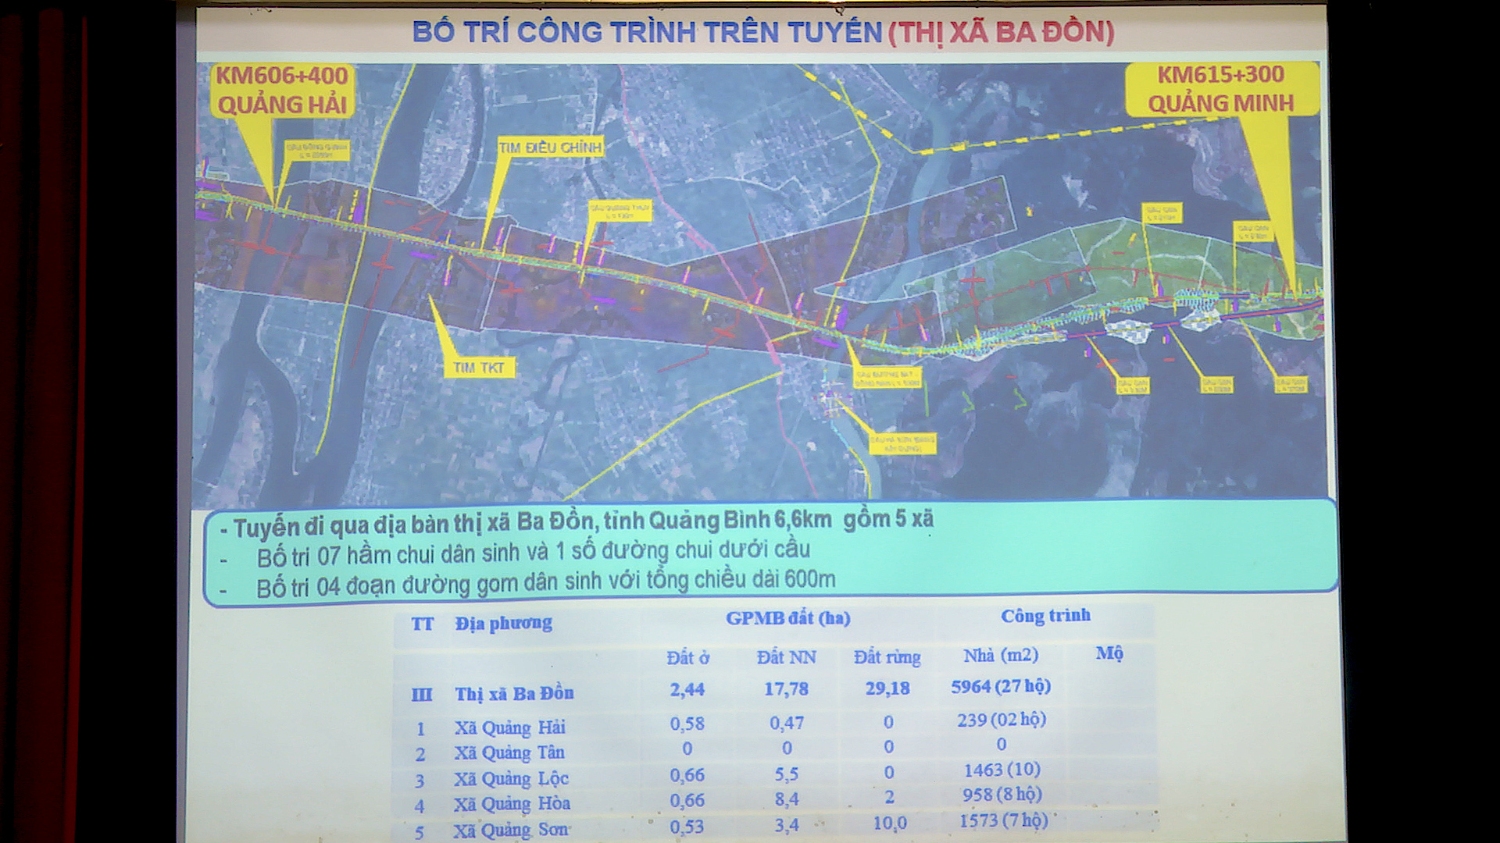 Bản đồ bố trí công trình trên tuyến thị xã Ba Đồn